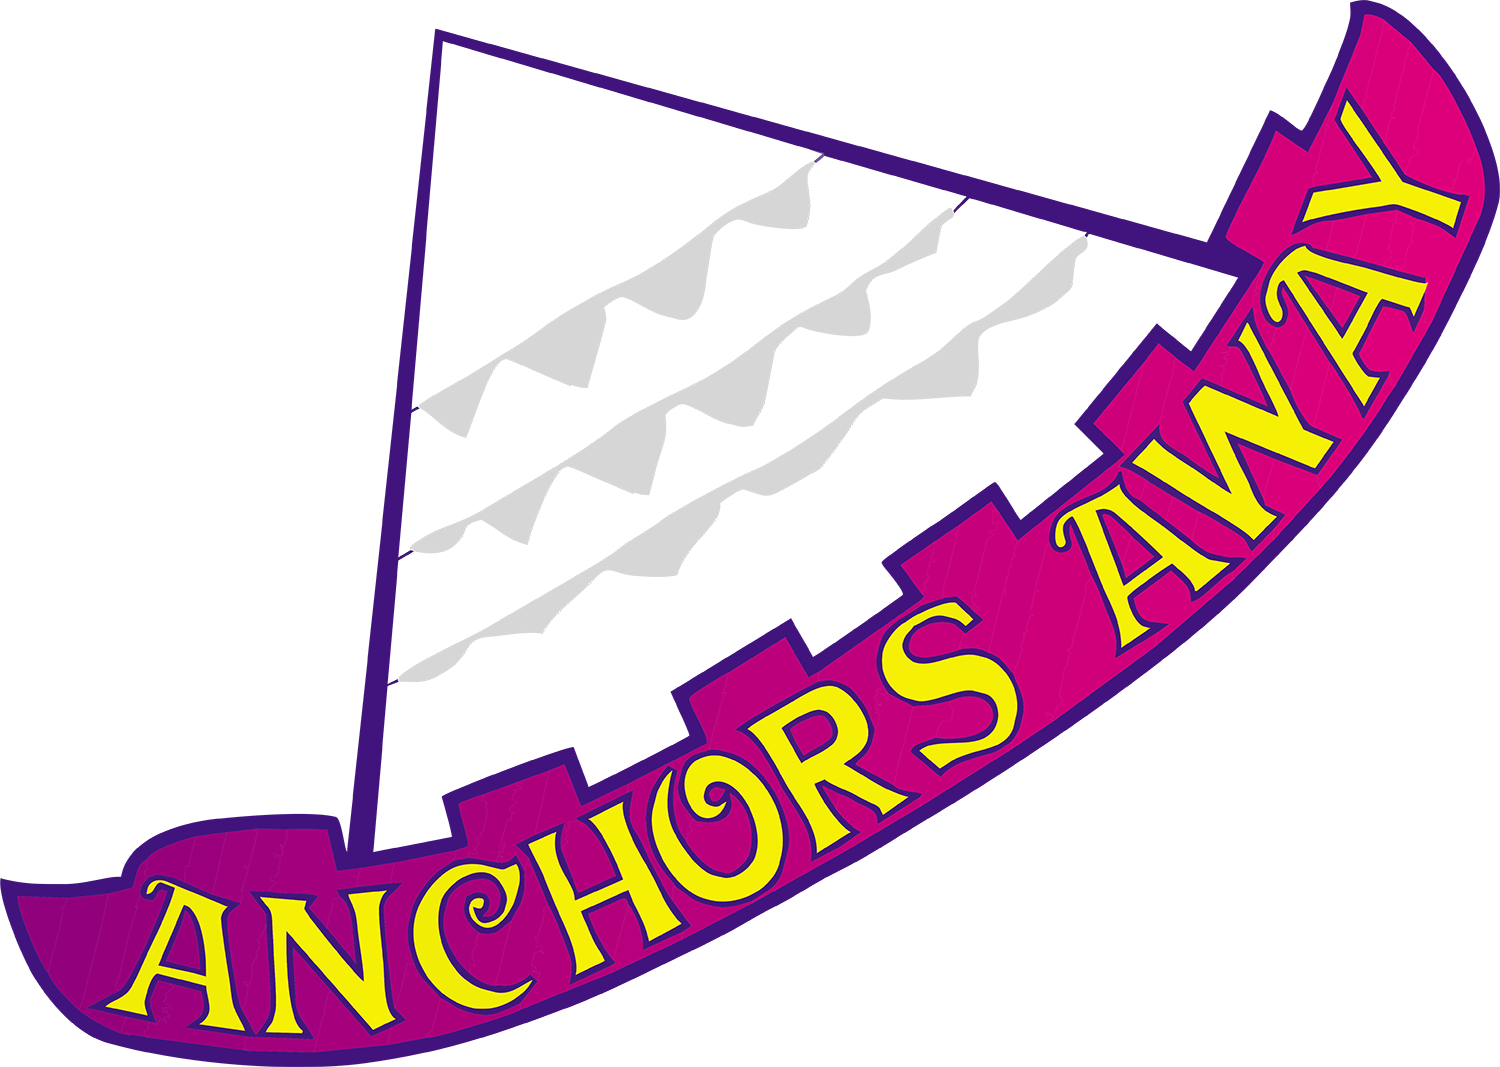 Anchor - Anchor (1500x1067)